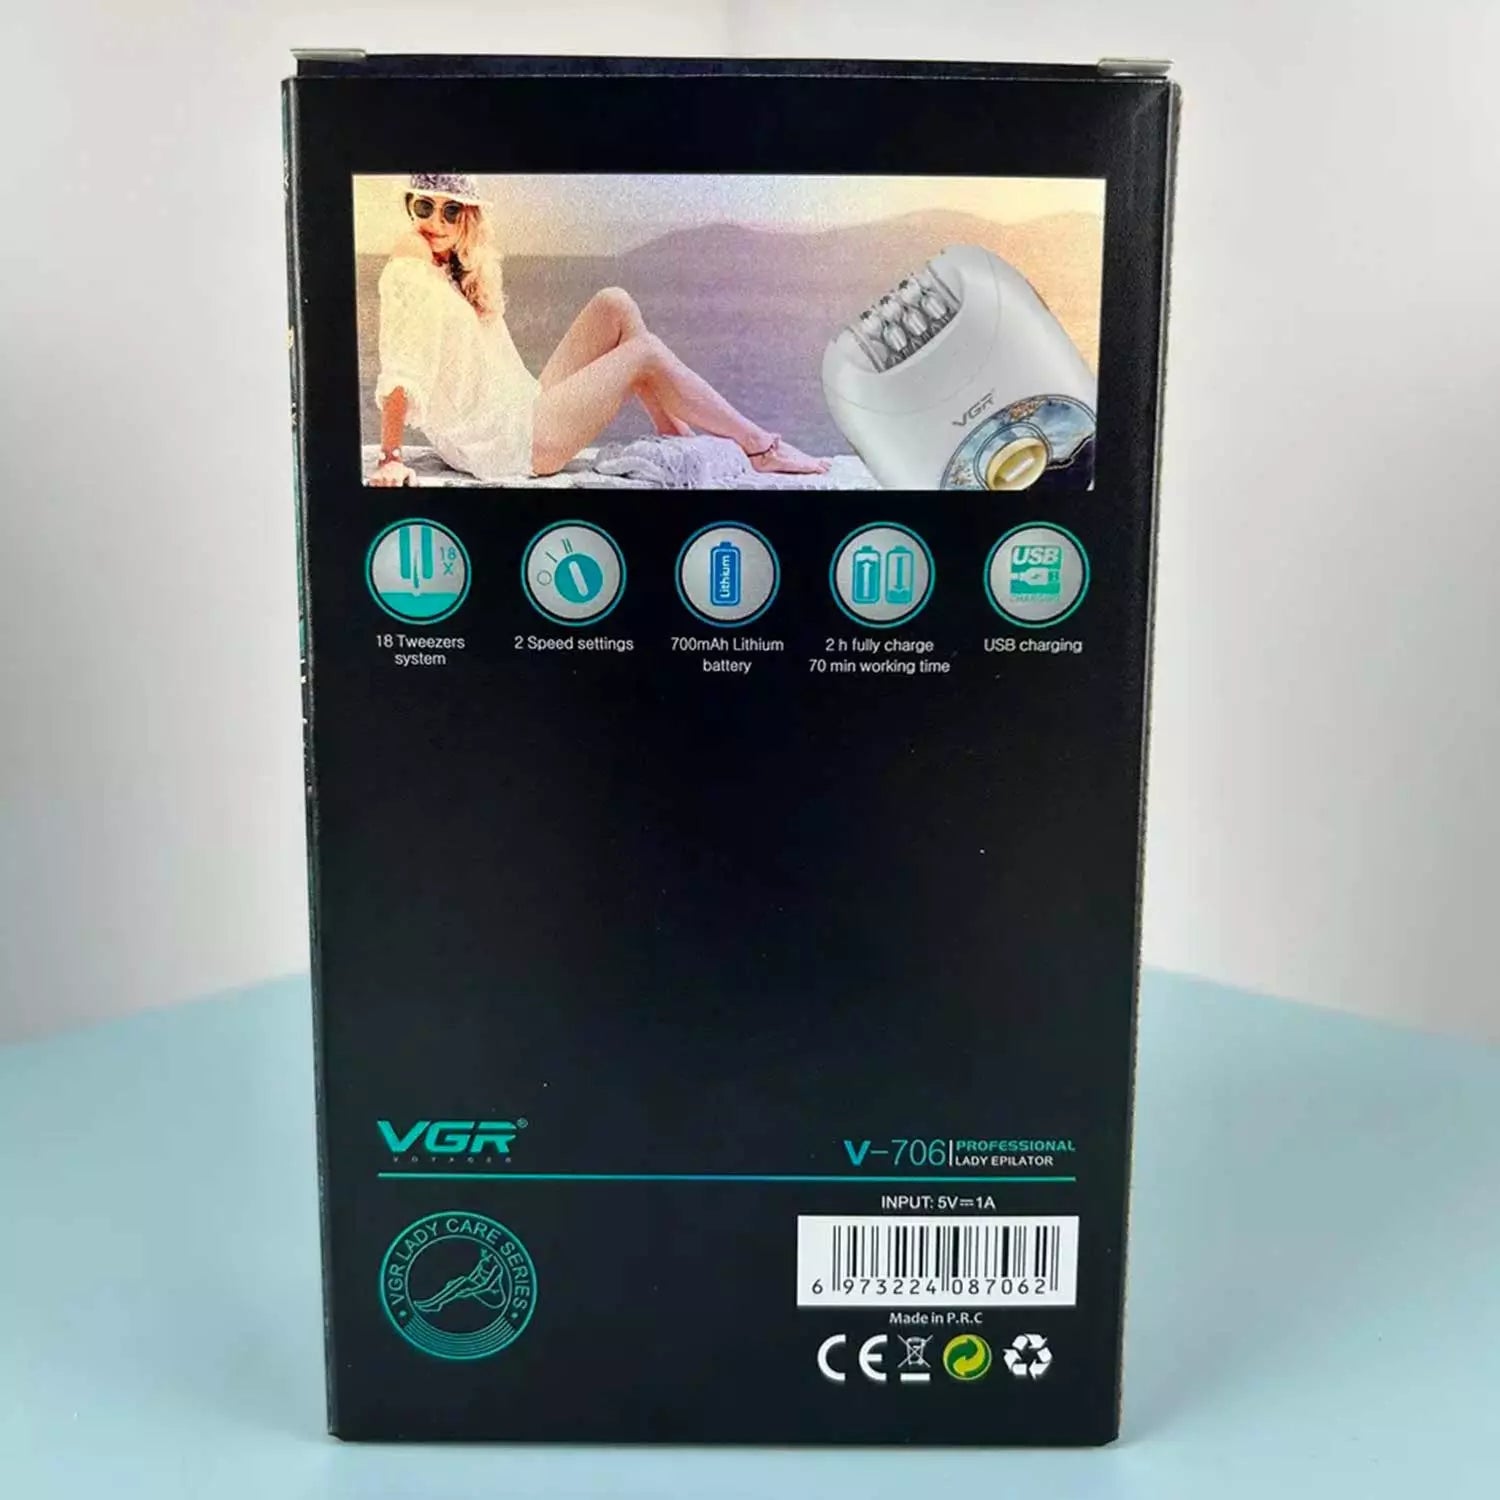 VGR V-706 Epilator For Women, White